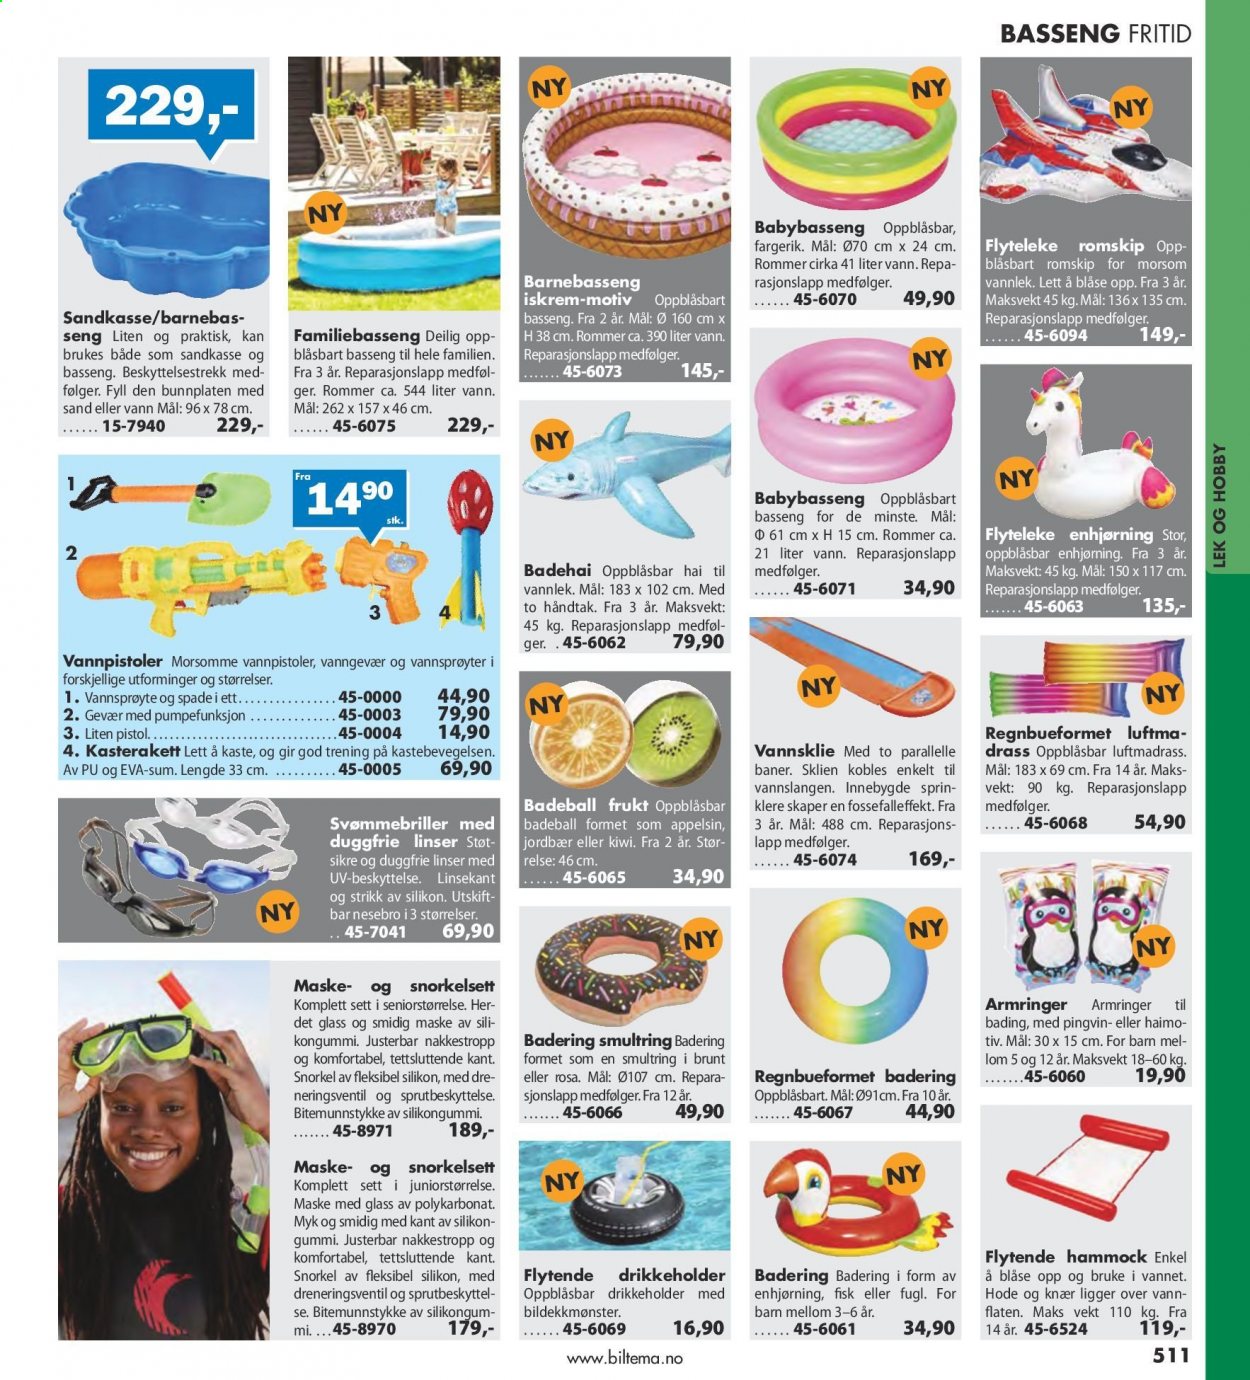 thumbnail - Kundeavis Biltema - Produkter fra tilbudsaviser - barnebasseng, badering. Side 511.